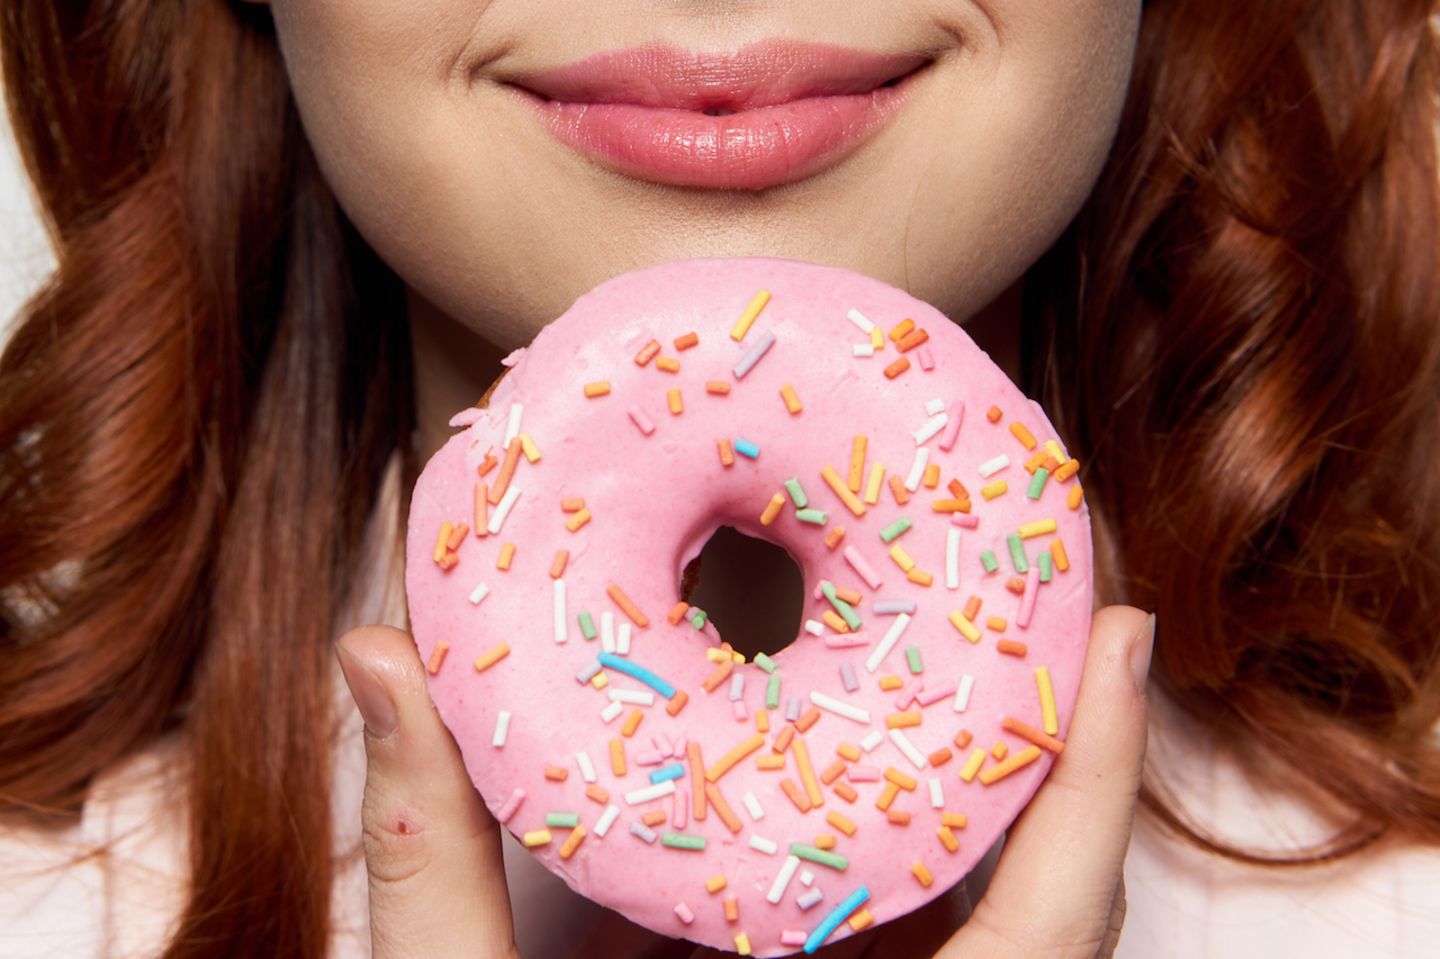 Ernährungsfalle: Frau hält Donut vor ihr Gesicht